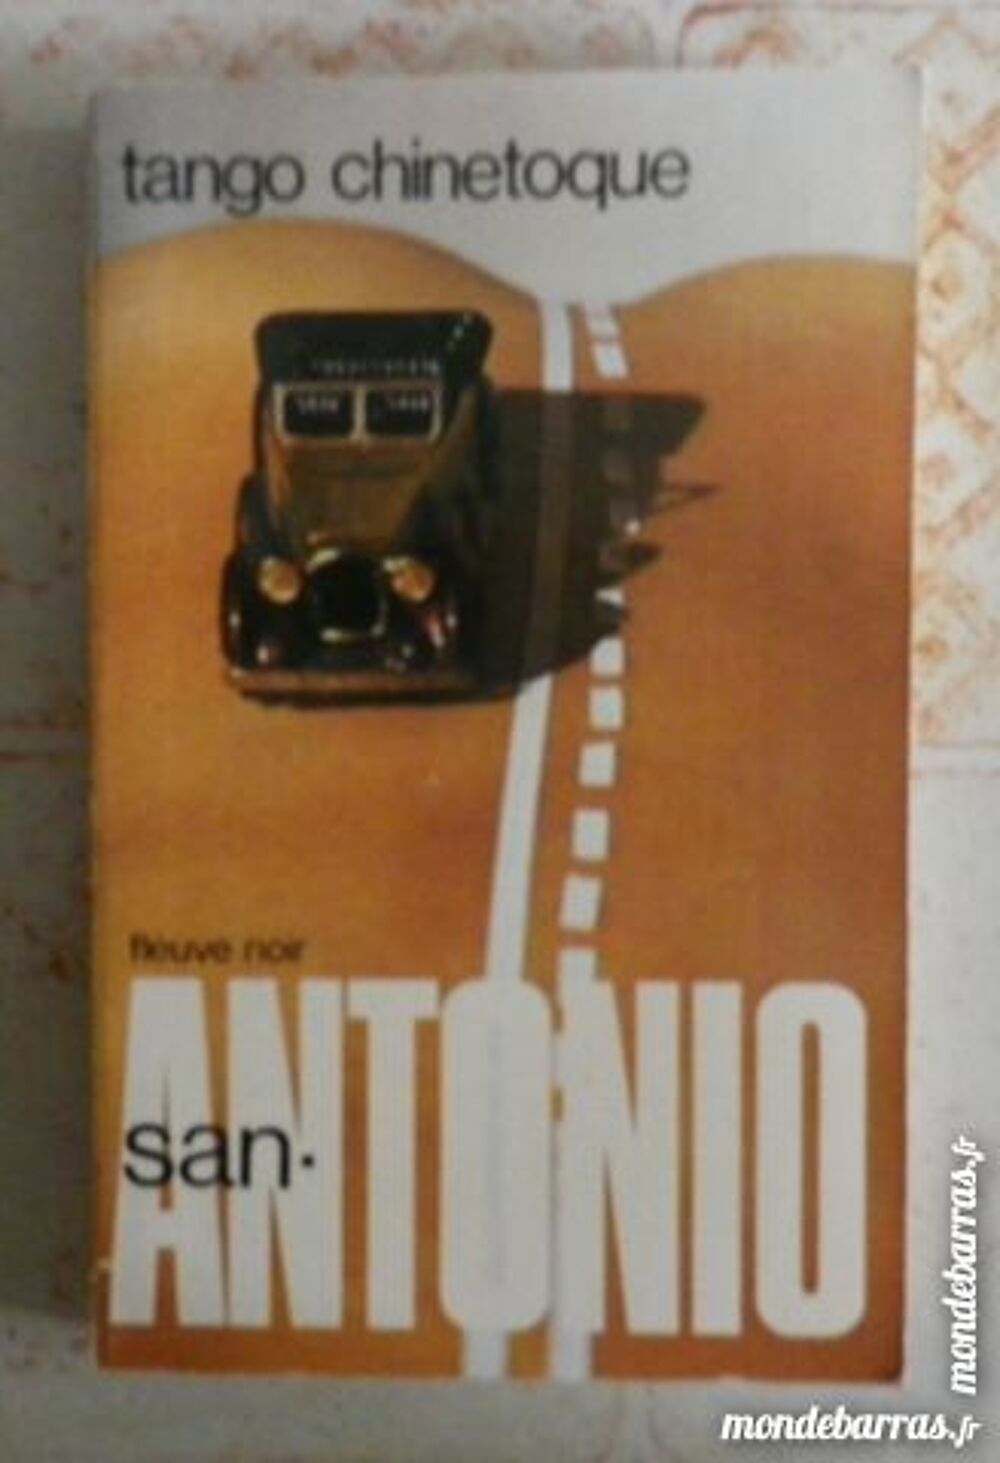 TANGO CHINETOQUE SAN ANTONIO 511 24 1982 Livres et BD